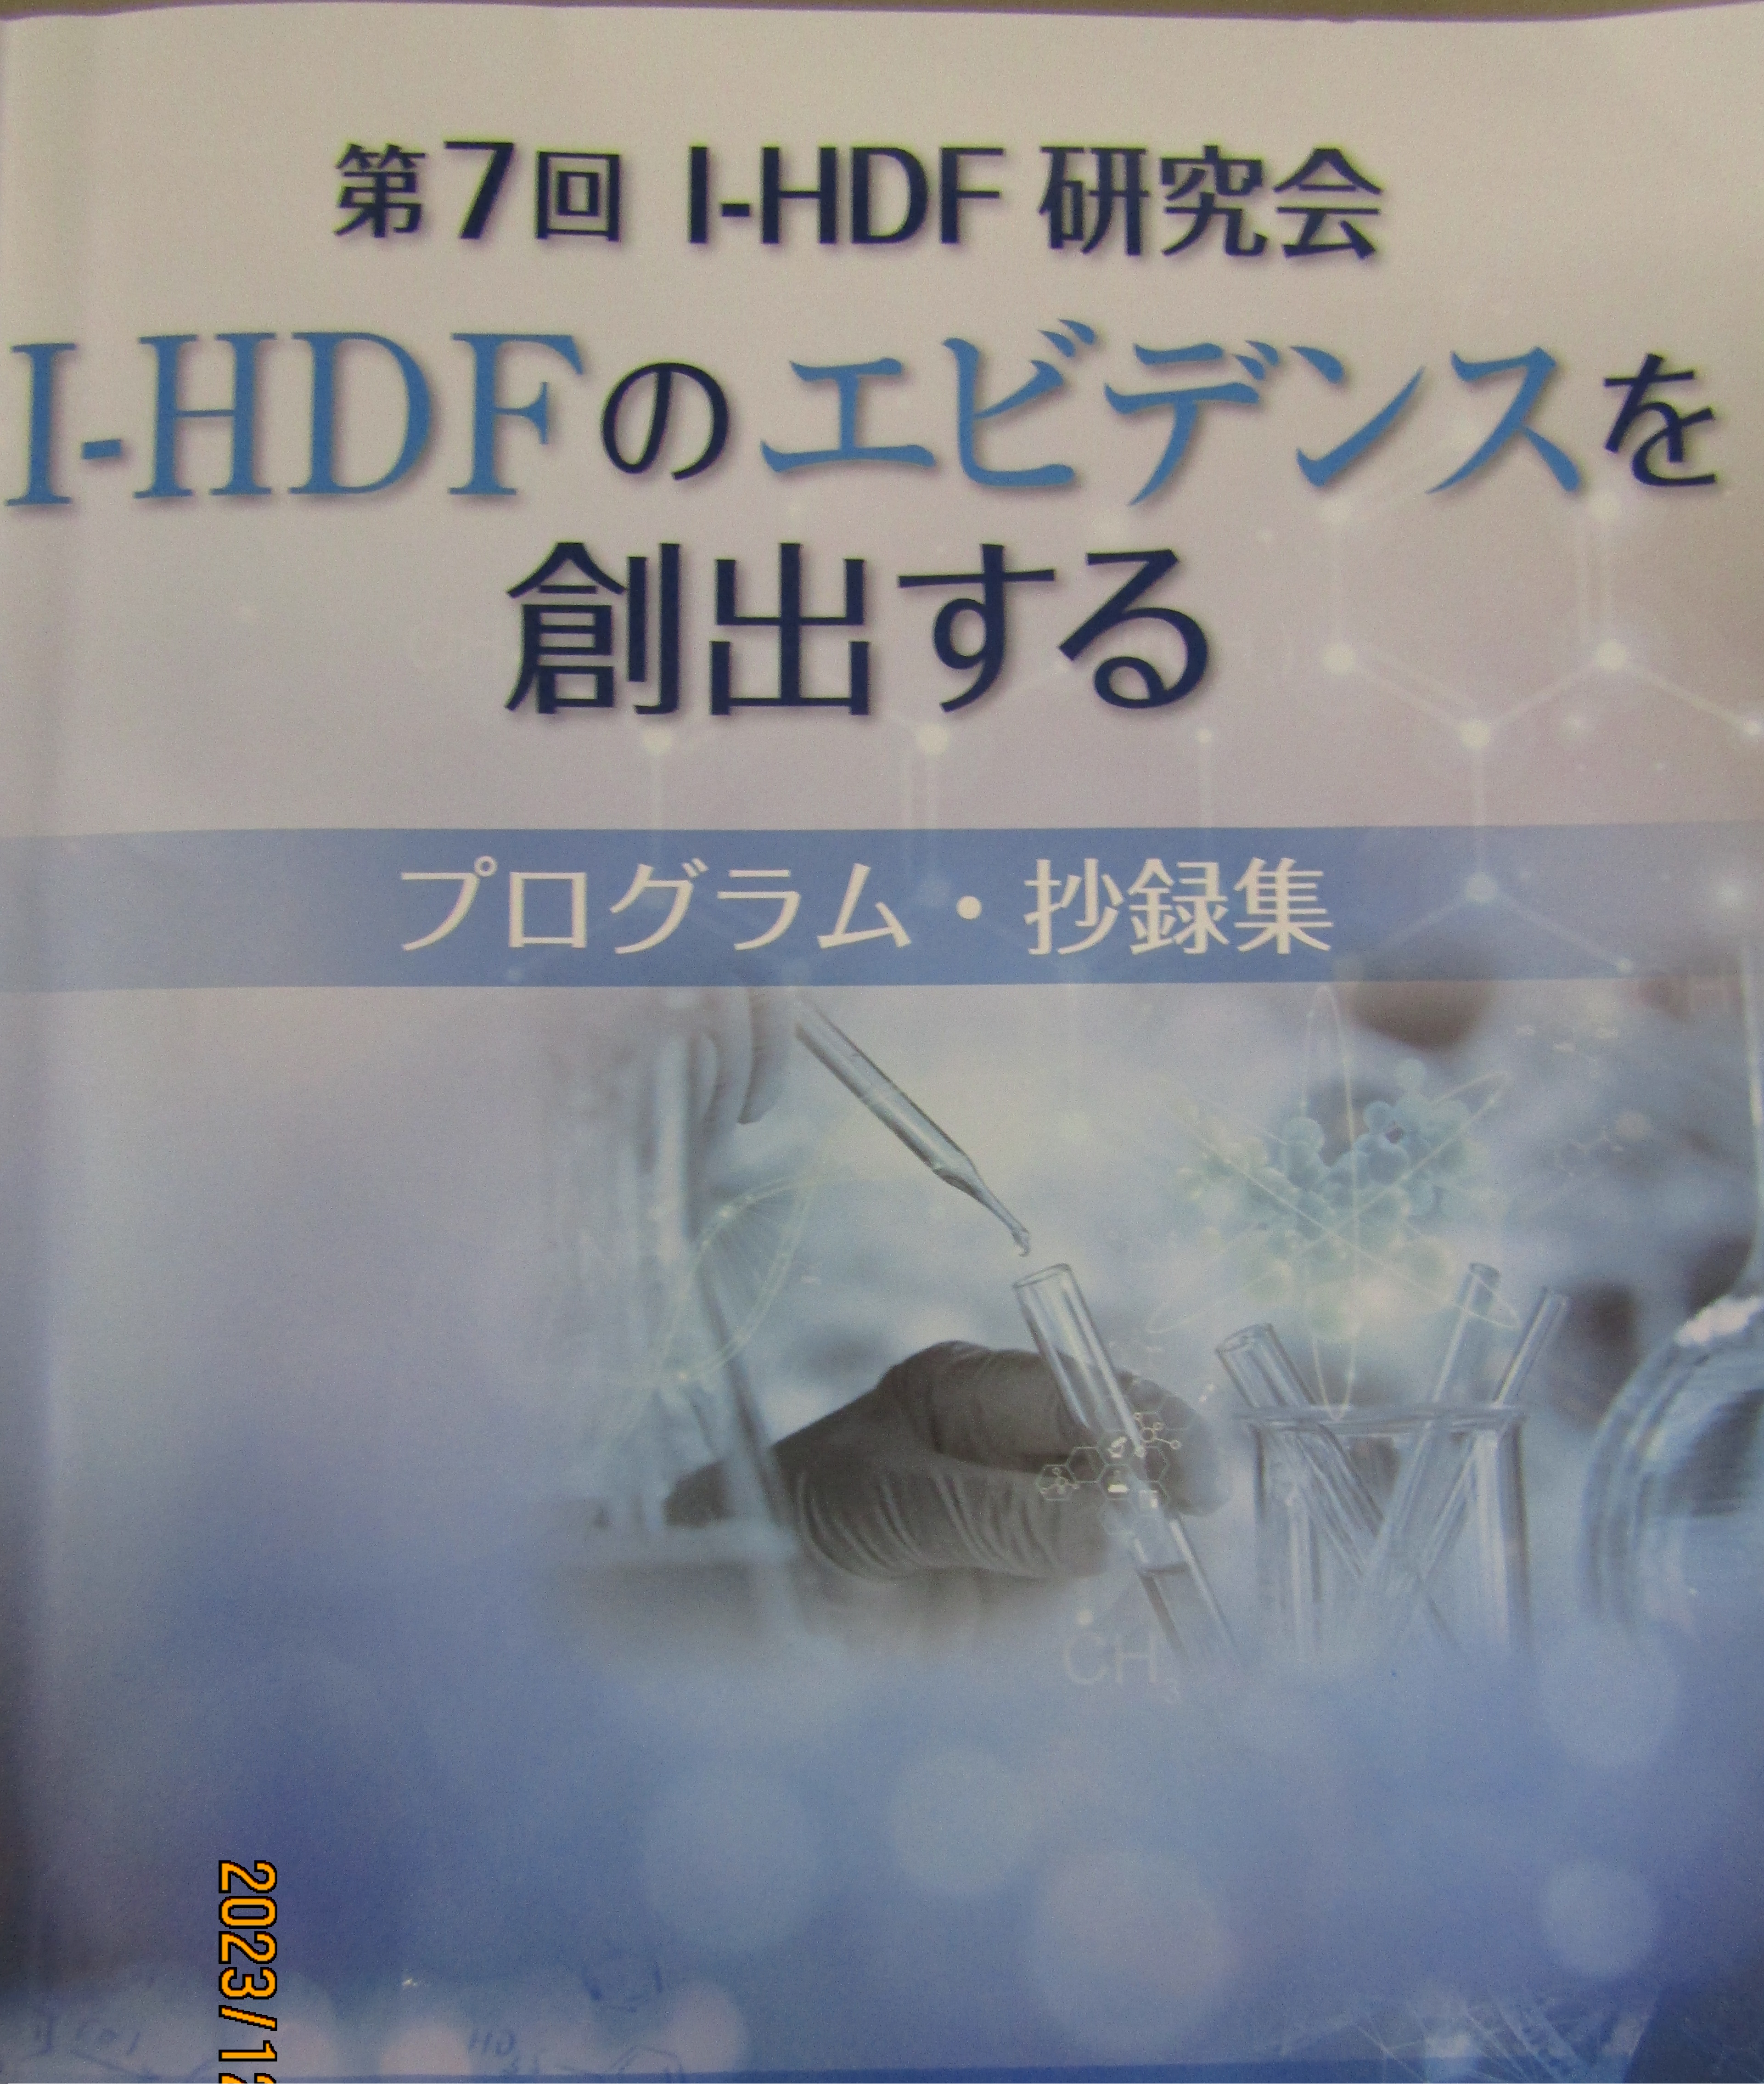 第7回I-HDF研究会に参加してきました。